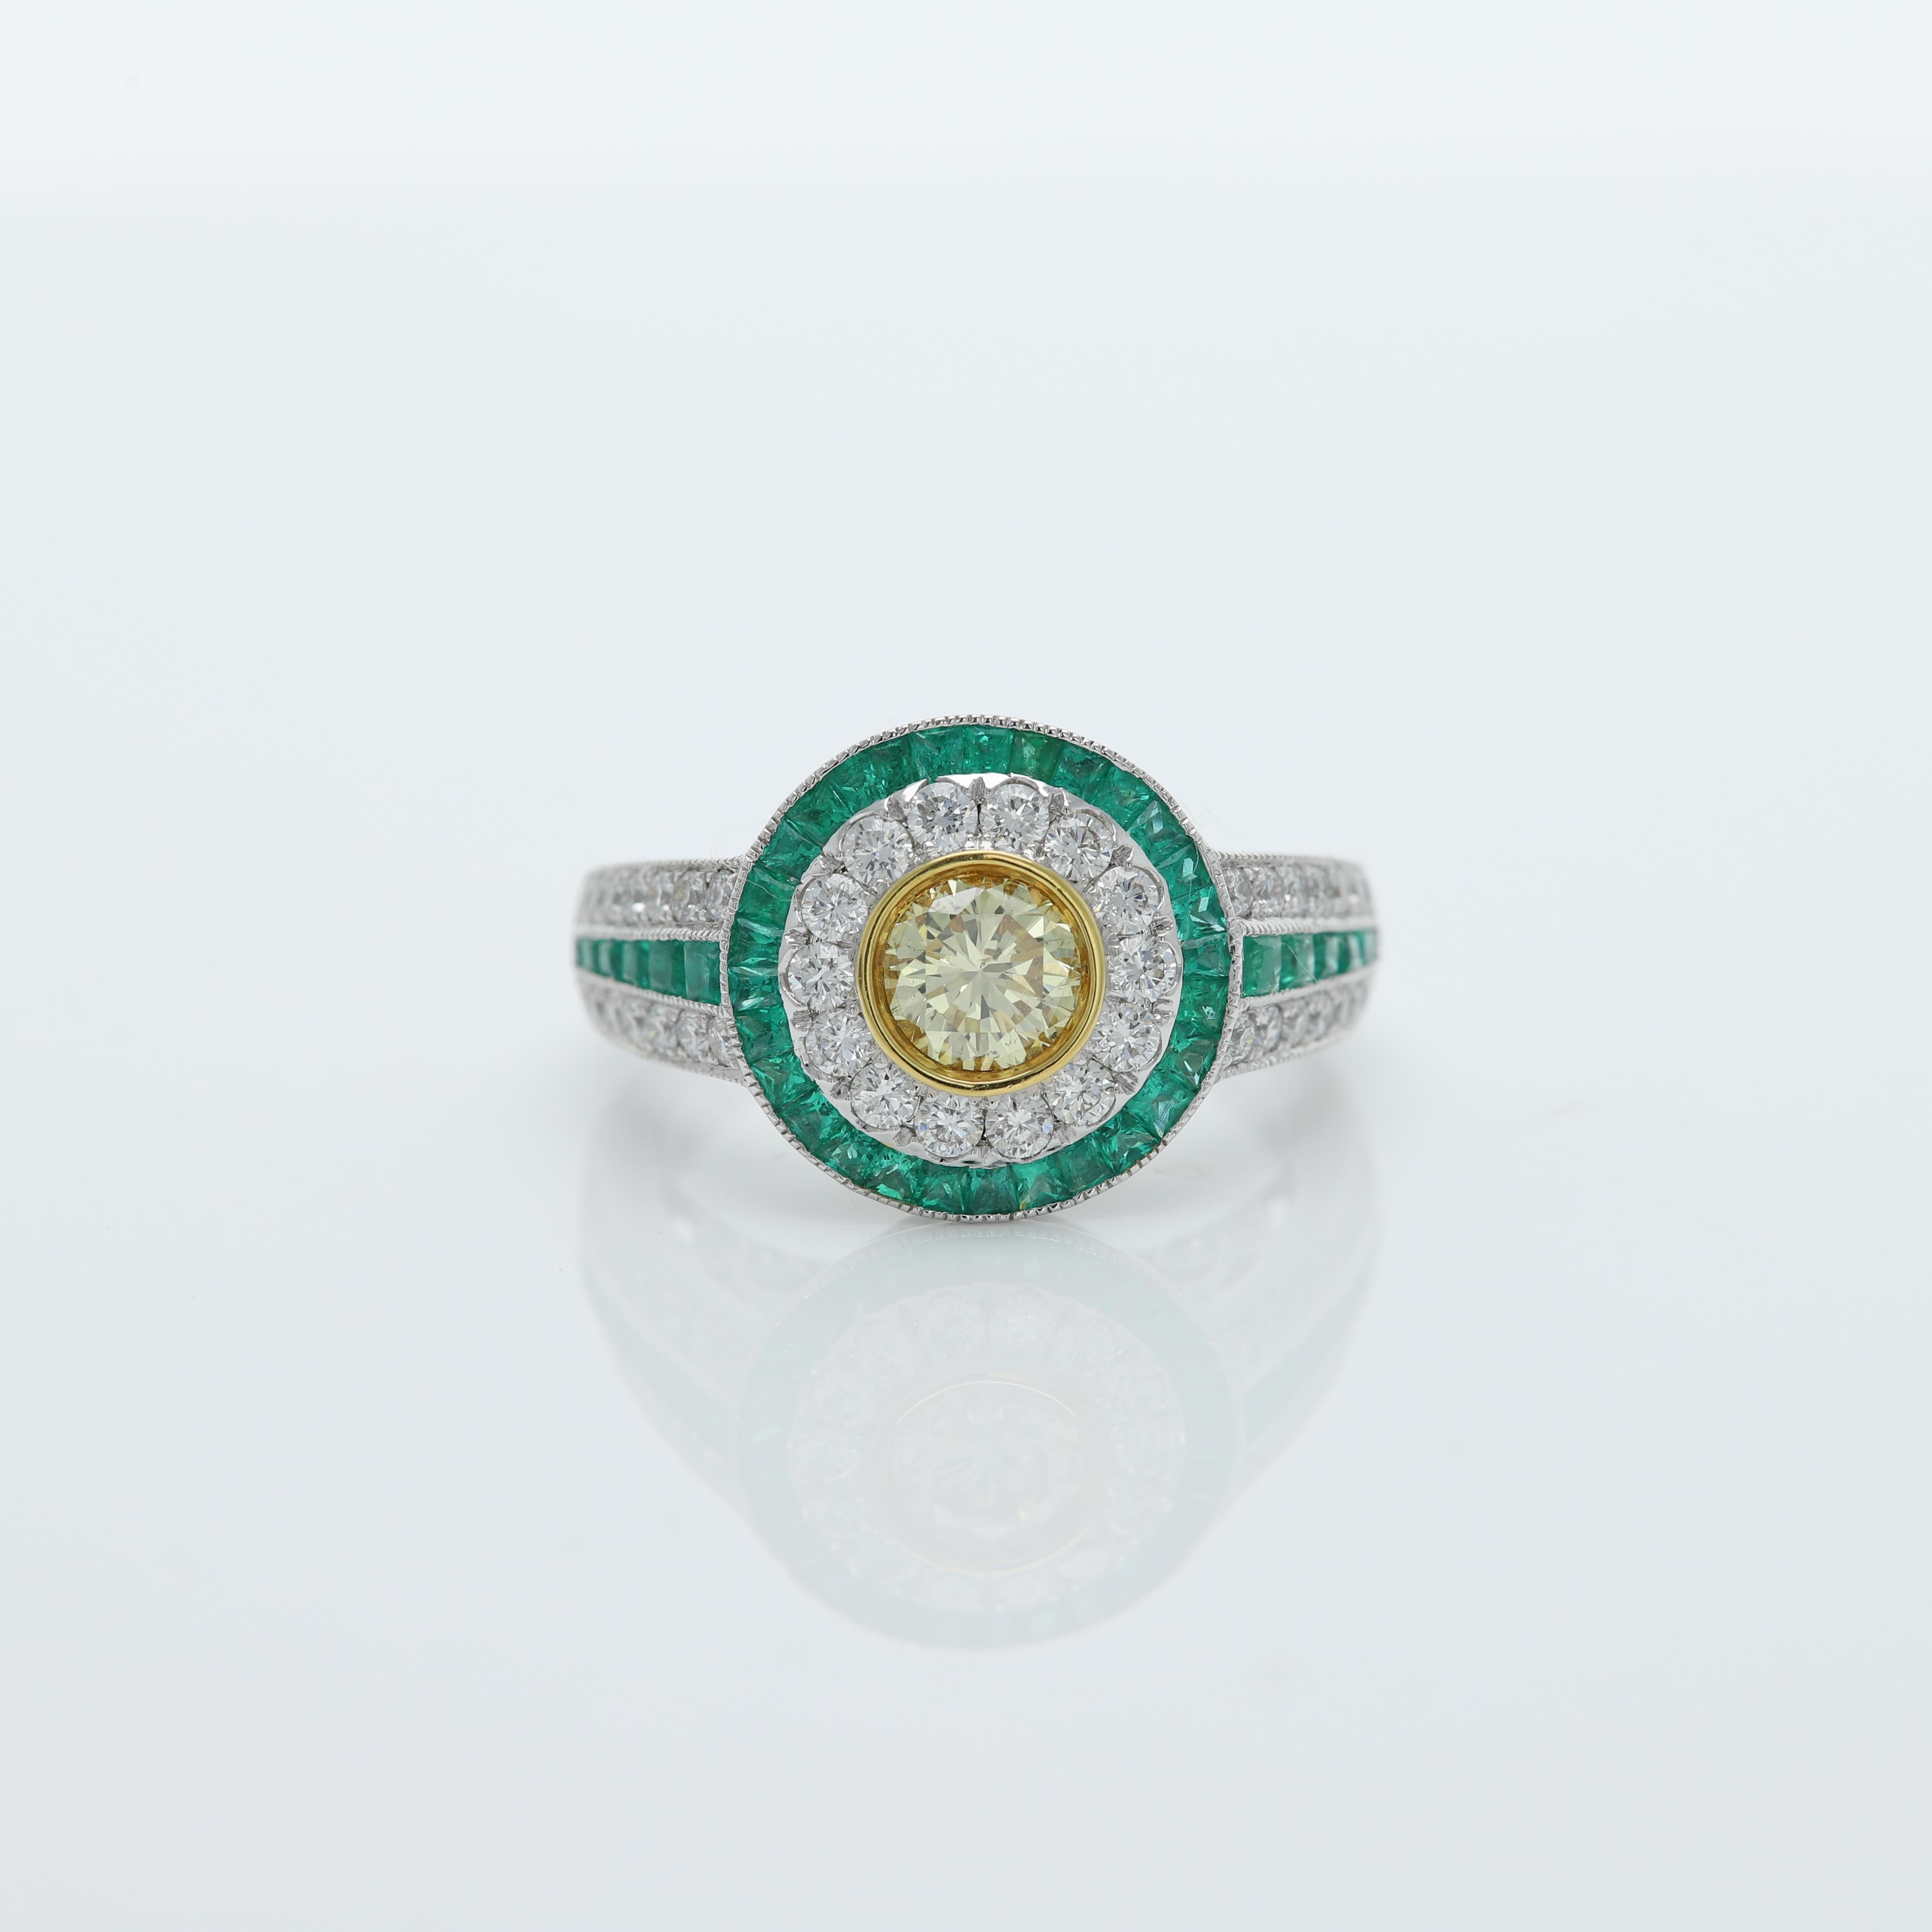 Bunter Ring im Art-Déco-Stil - eindrucksvoll und mutig
In der Mitte ein Diamant, umgeben von grünen Smaragden, an den Seiten ebenfalls Smaragd und Diamanten
Alle Steine sind natürlich
18k Weißgold 7,30 Gramm
Größe des zentralen Diamanten - 0,58